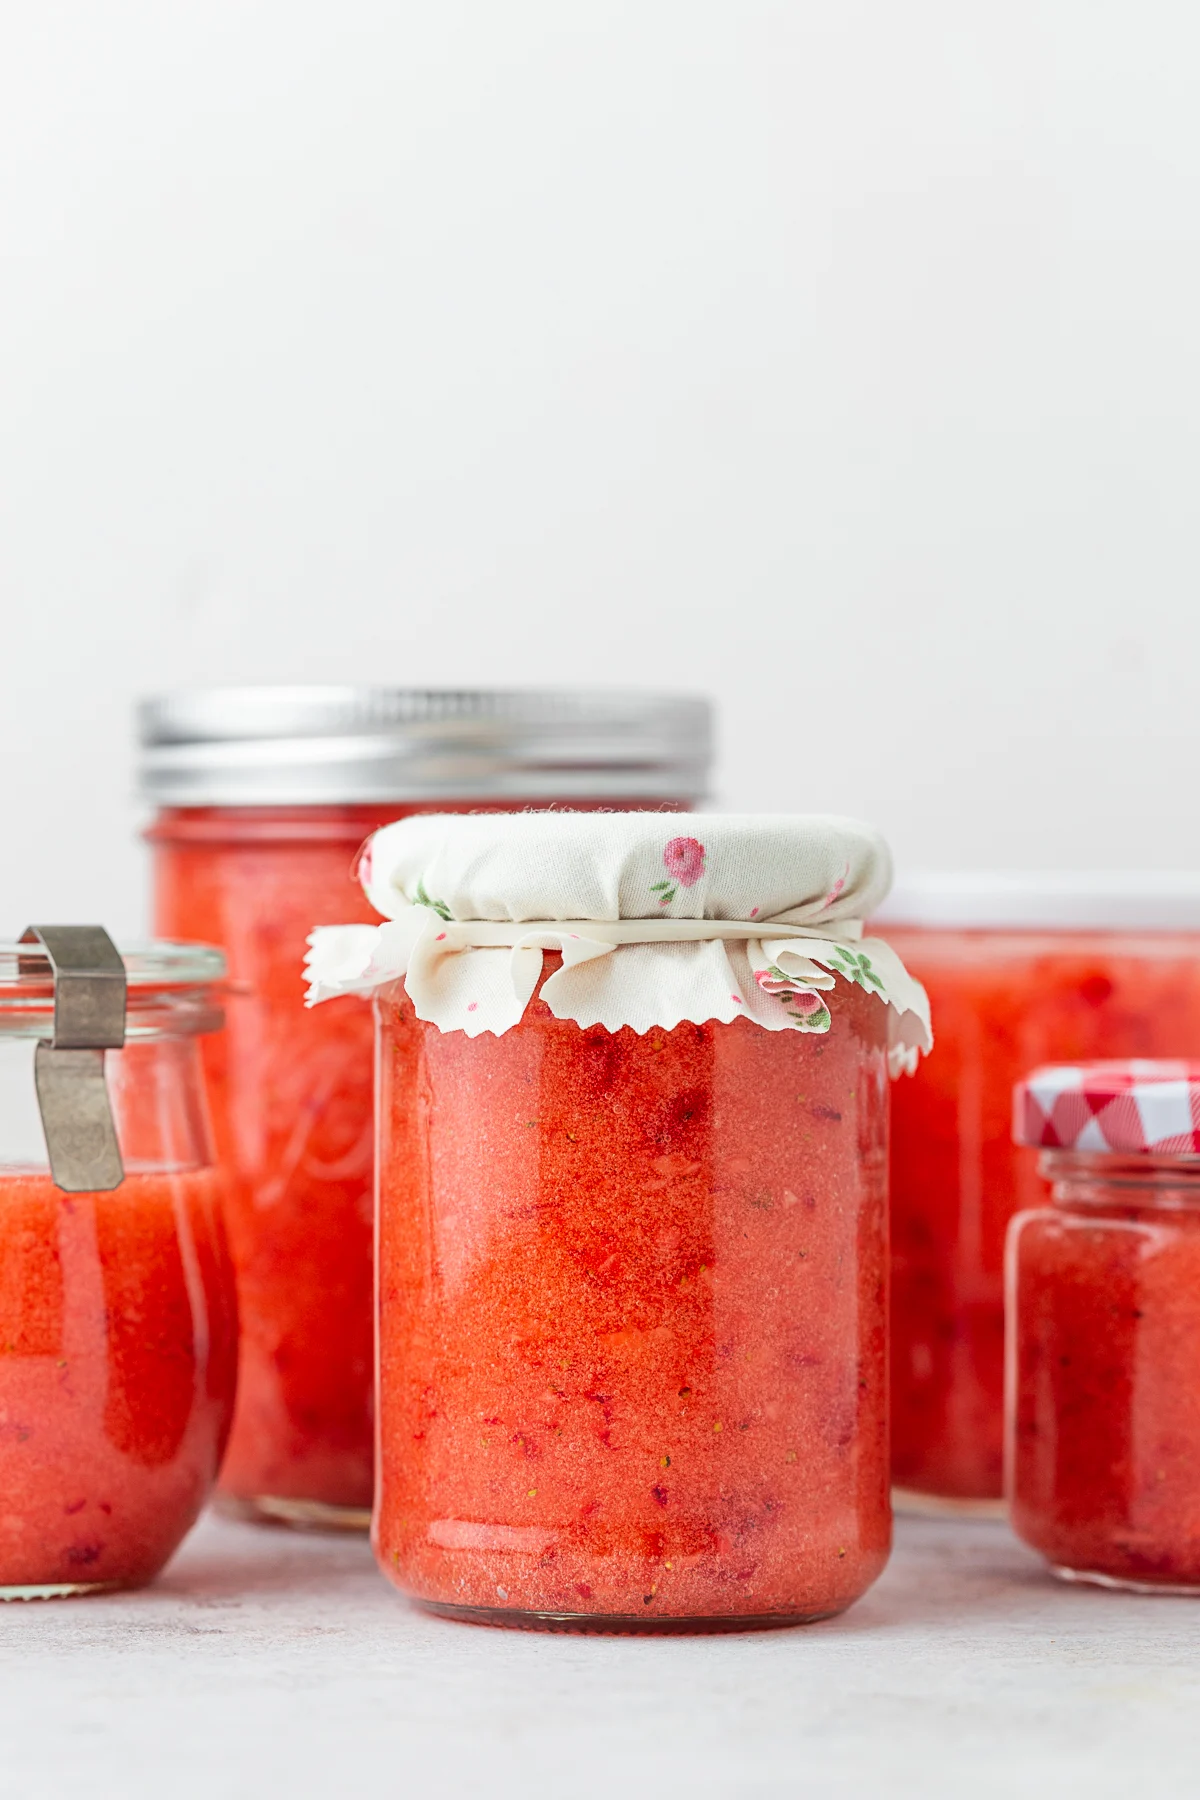 Glass jars filled with strawberry freezer jam. 